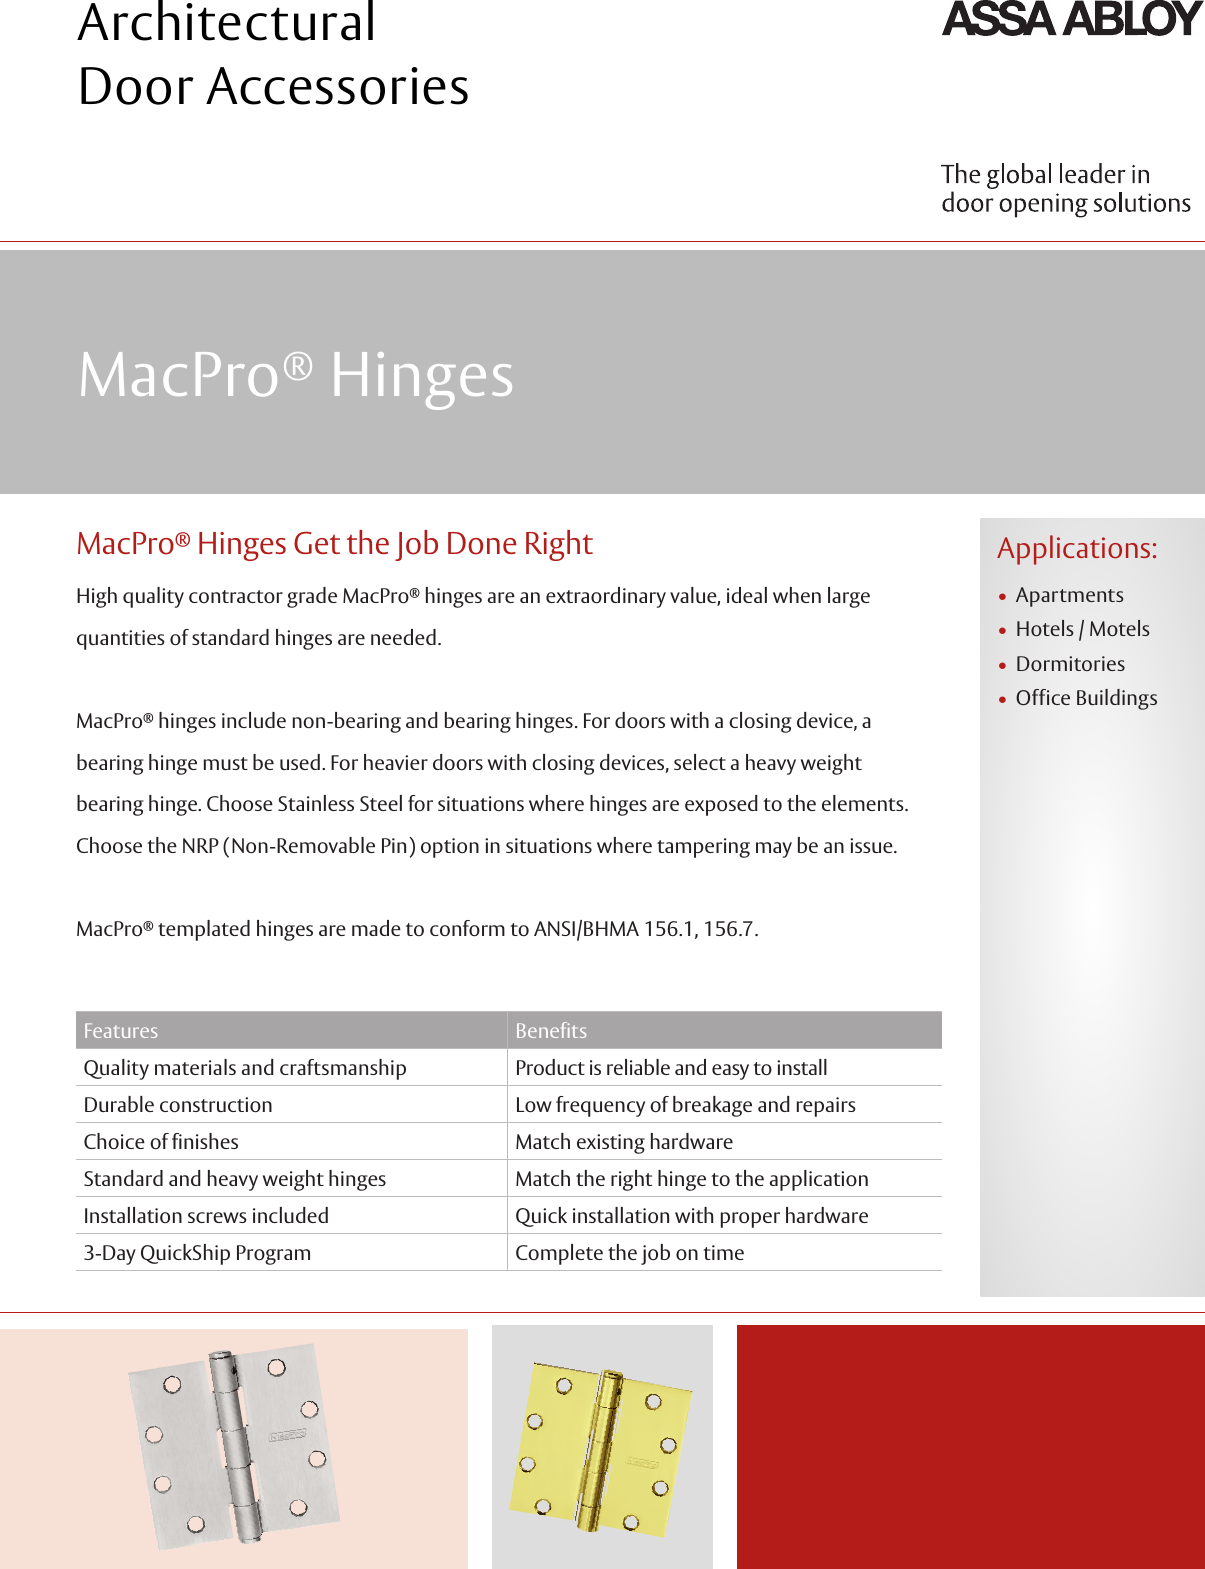 Page 1 of 2 - McKinney  Mac Pro By Mc Kinney Aadss1013390